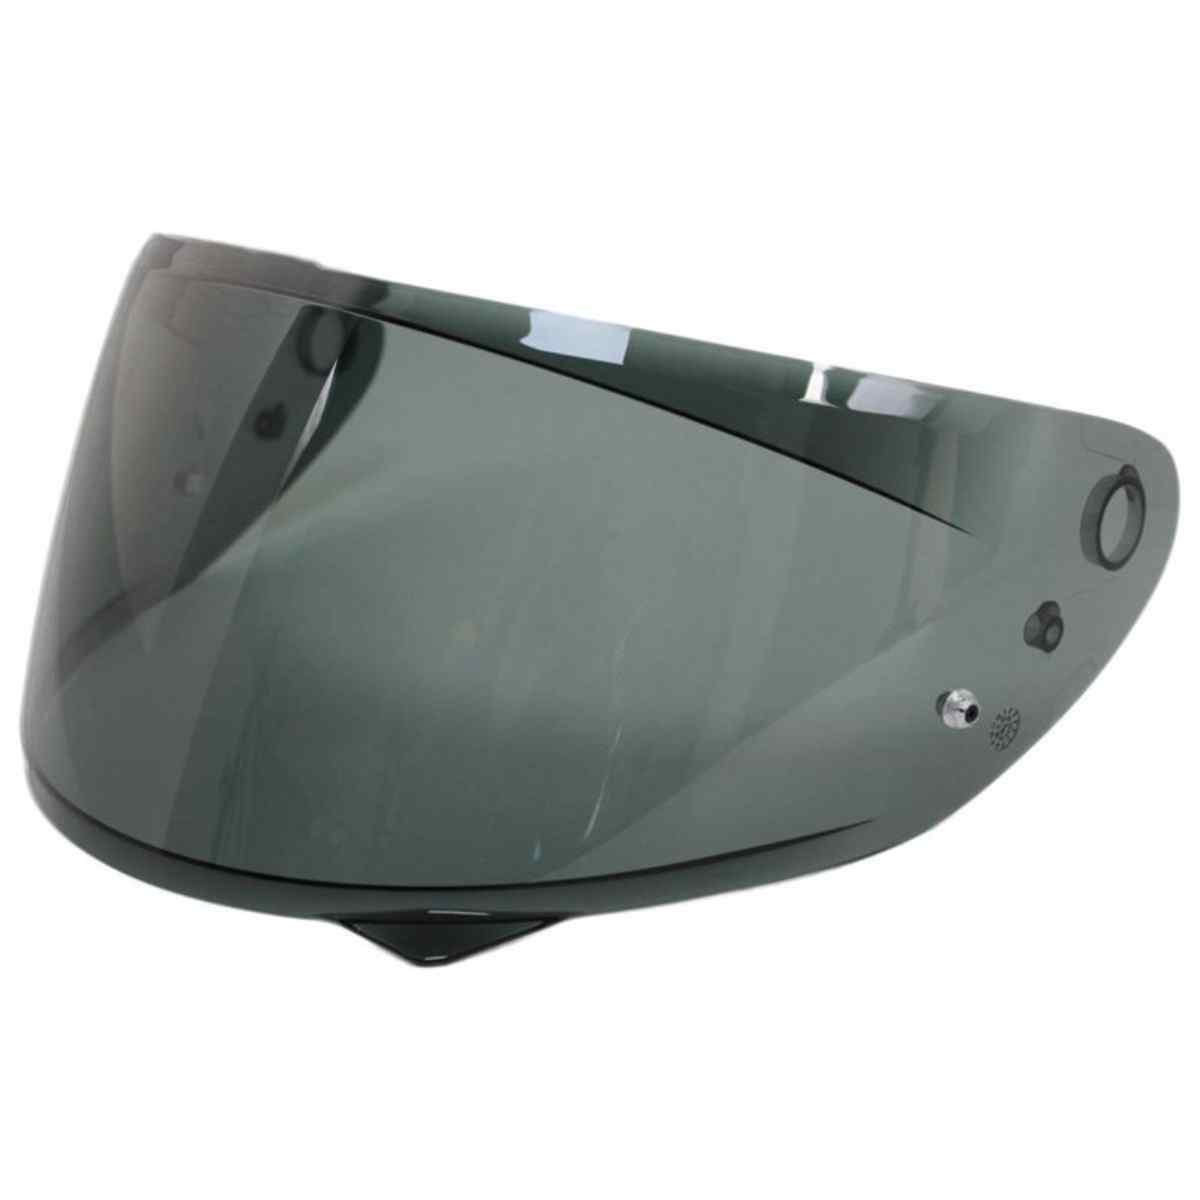 Genuine HJC Helmets replacement visors for HJC Models C10